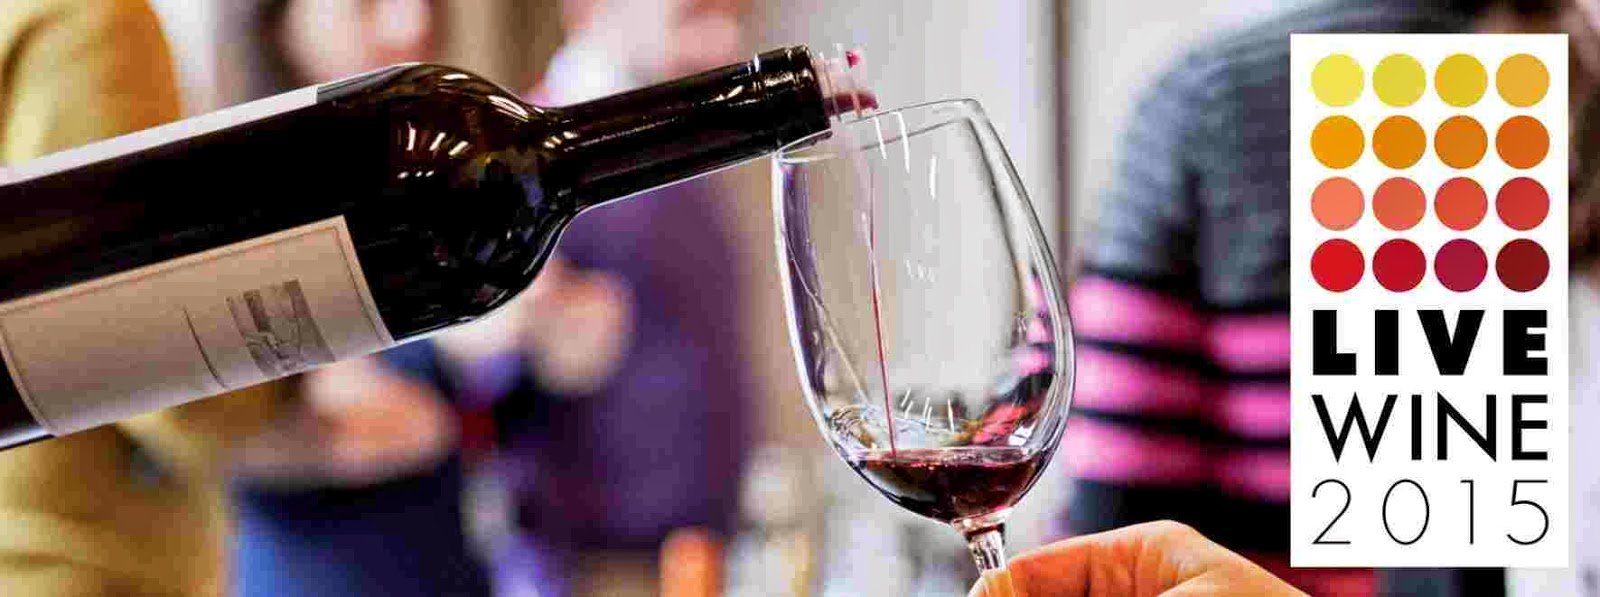 Dal 21 al 23 febbraio a Milano: Live Wine e i suoi vini artigianali